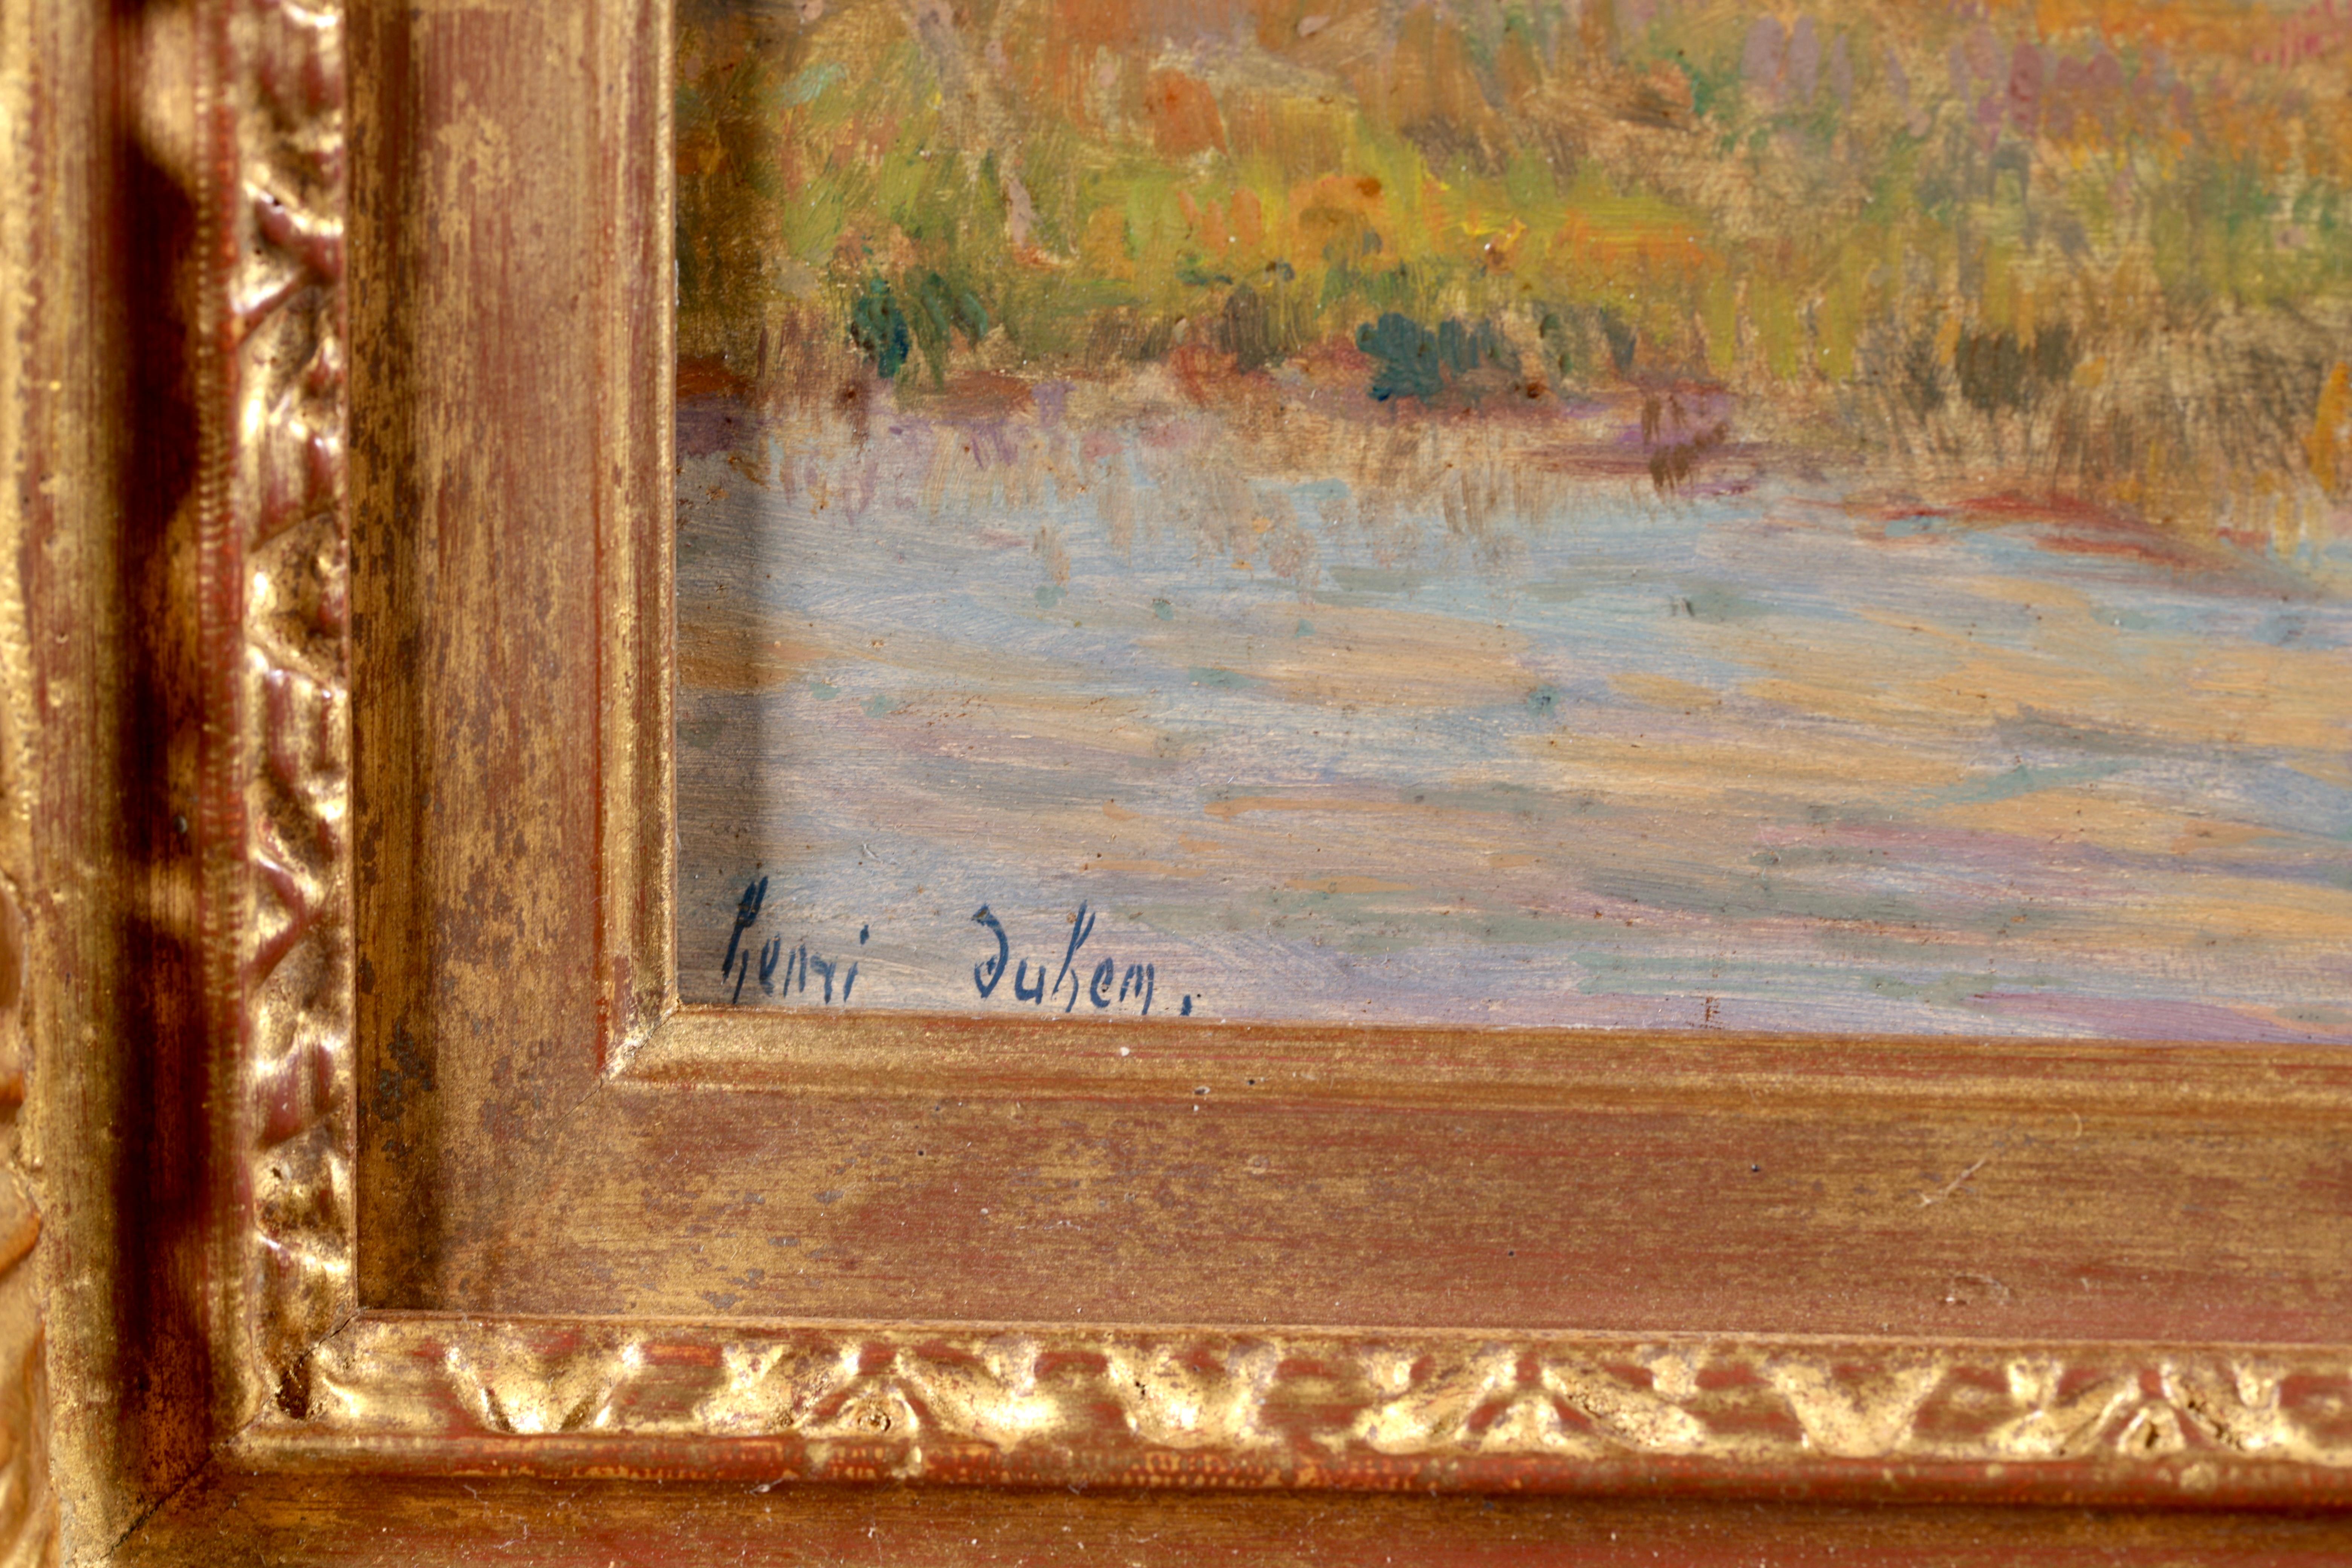 Huile sur panneau impressionniste signée et datée, personnages dans un paysage du peintre français Henri Duhem. L'œuvre représente un homme pêchant dans une rivière alors que la lune se lève sur un chalet en arrière-plan. 

Signature :
Signé en bas